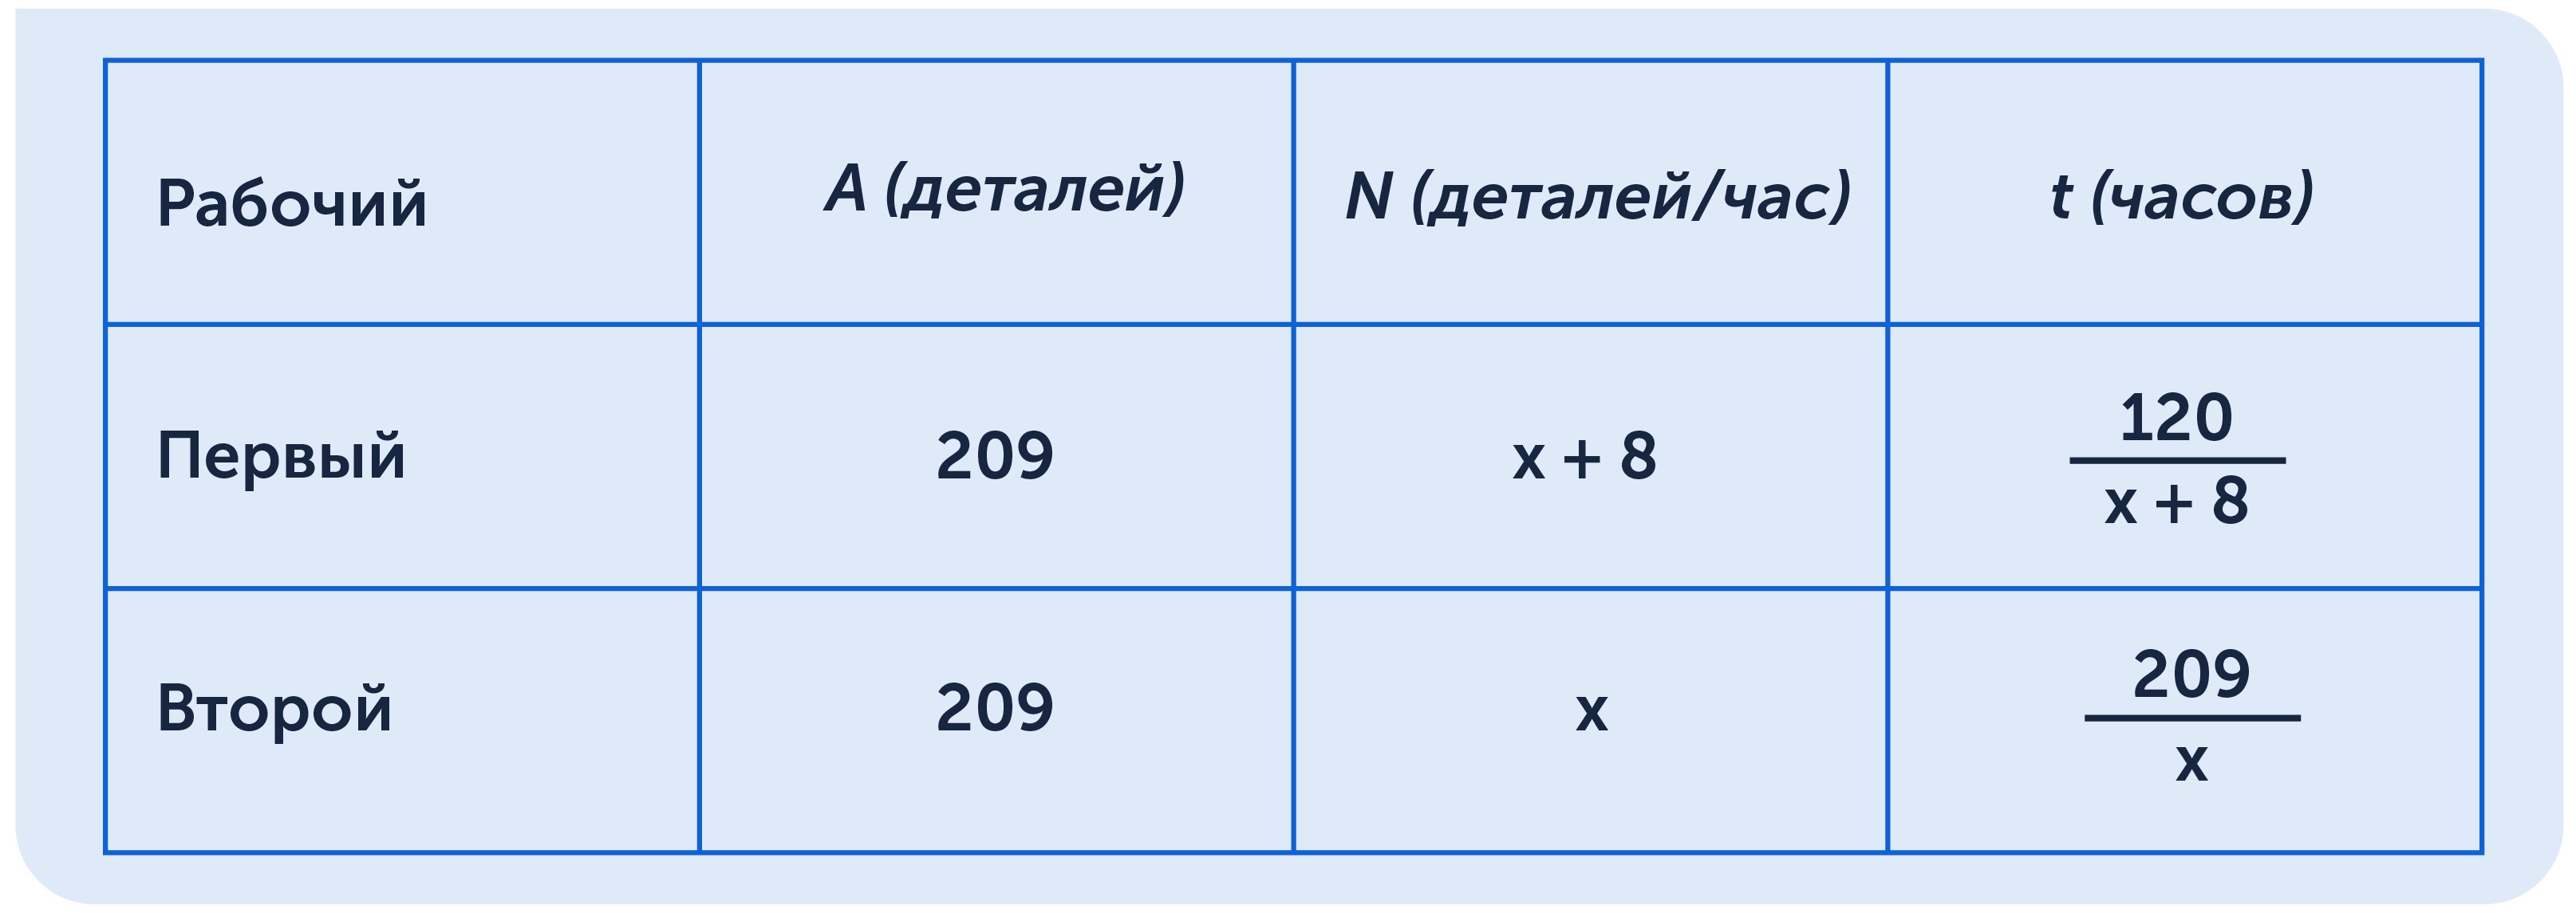 Решение текстовой задачи по математике: образец в таблице